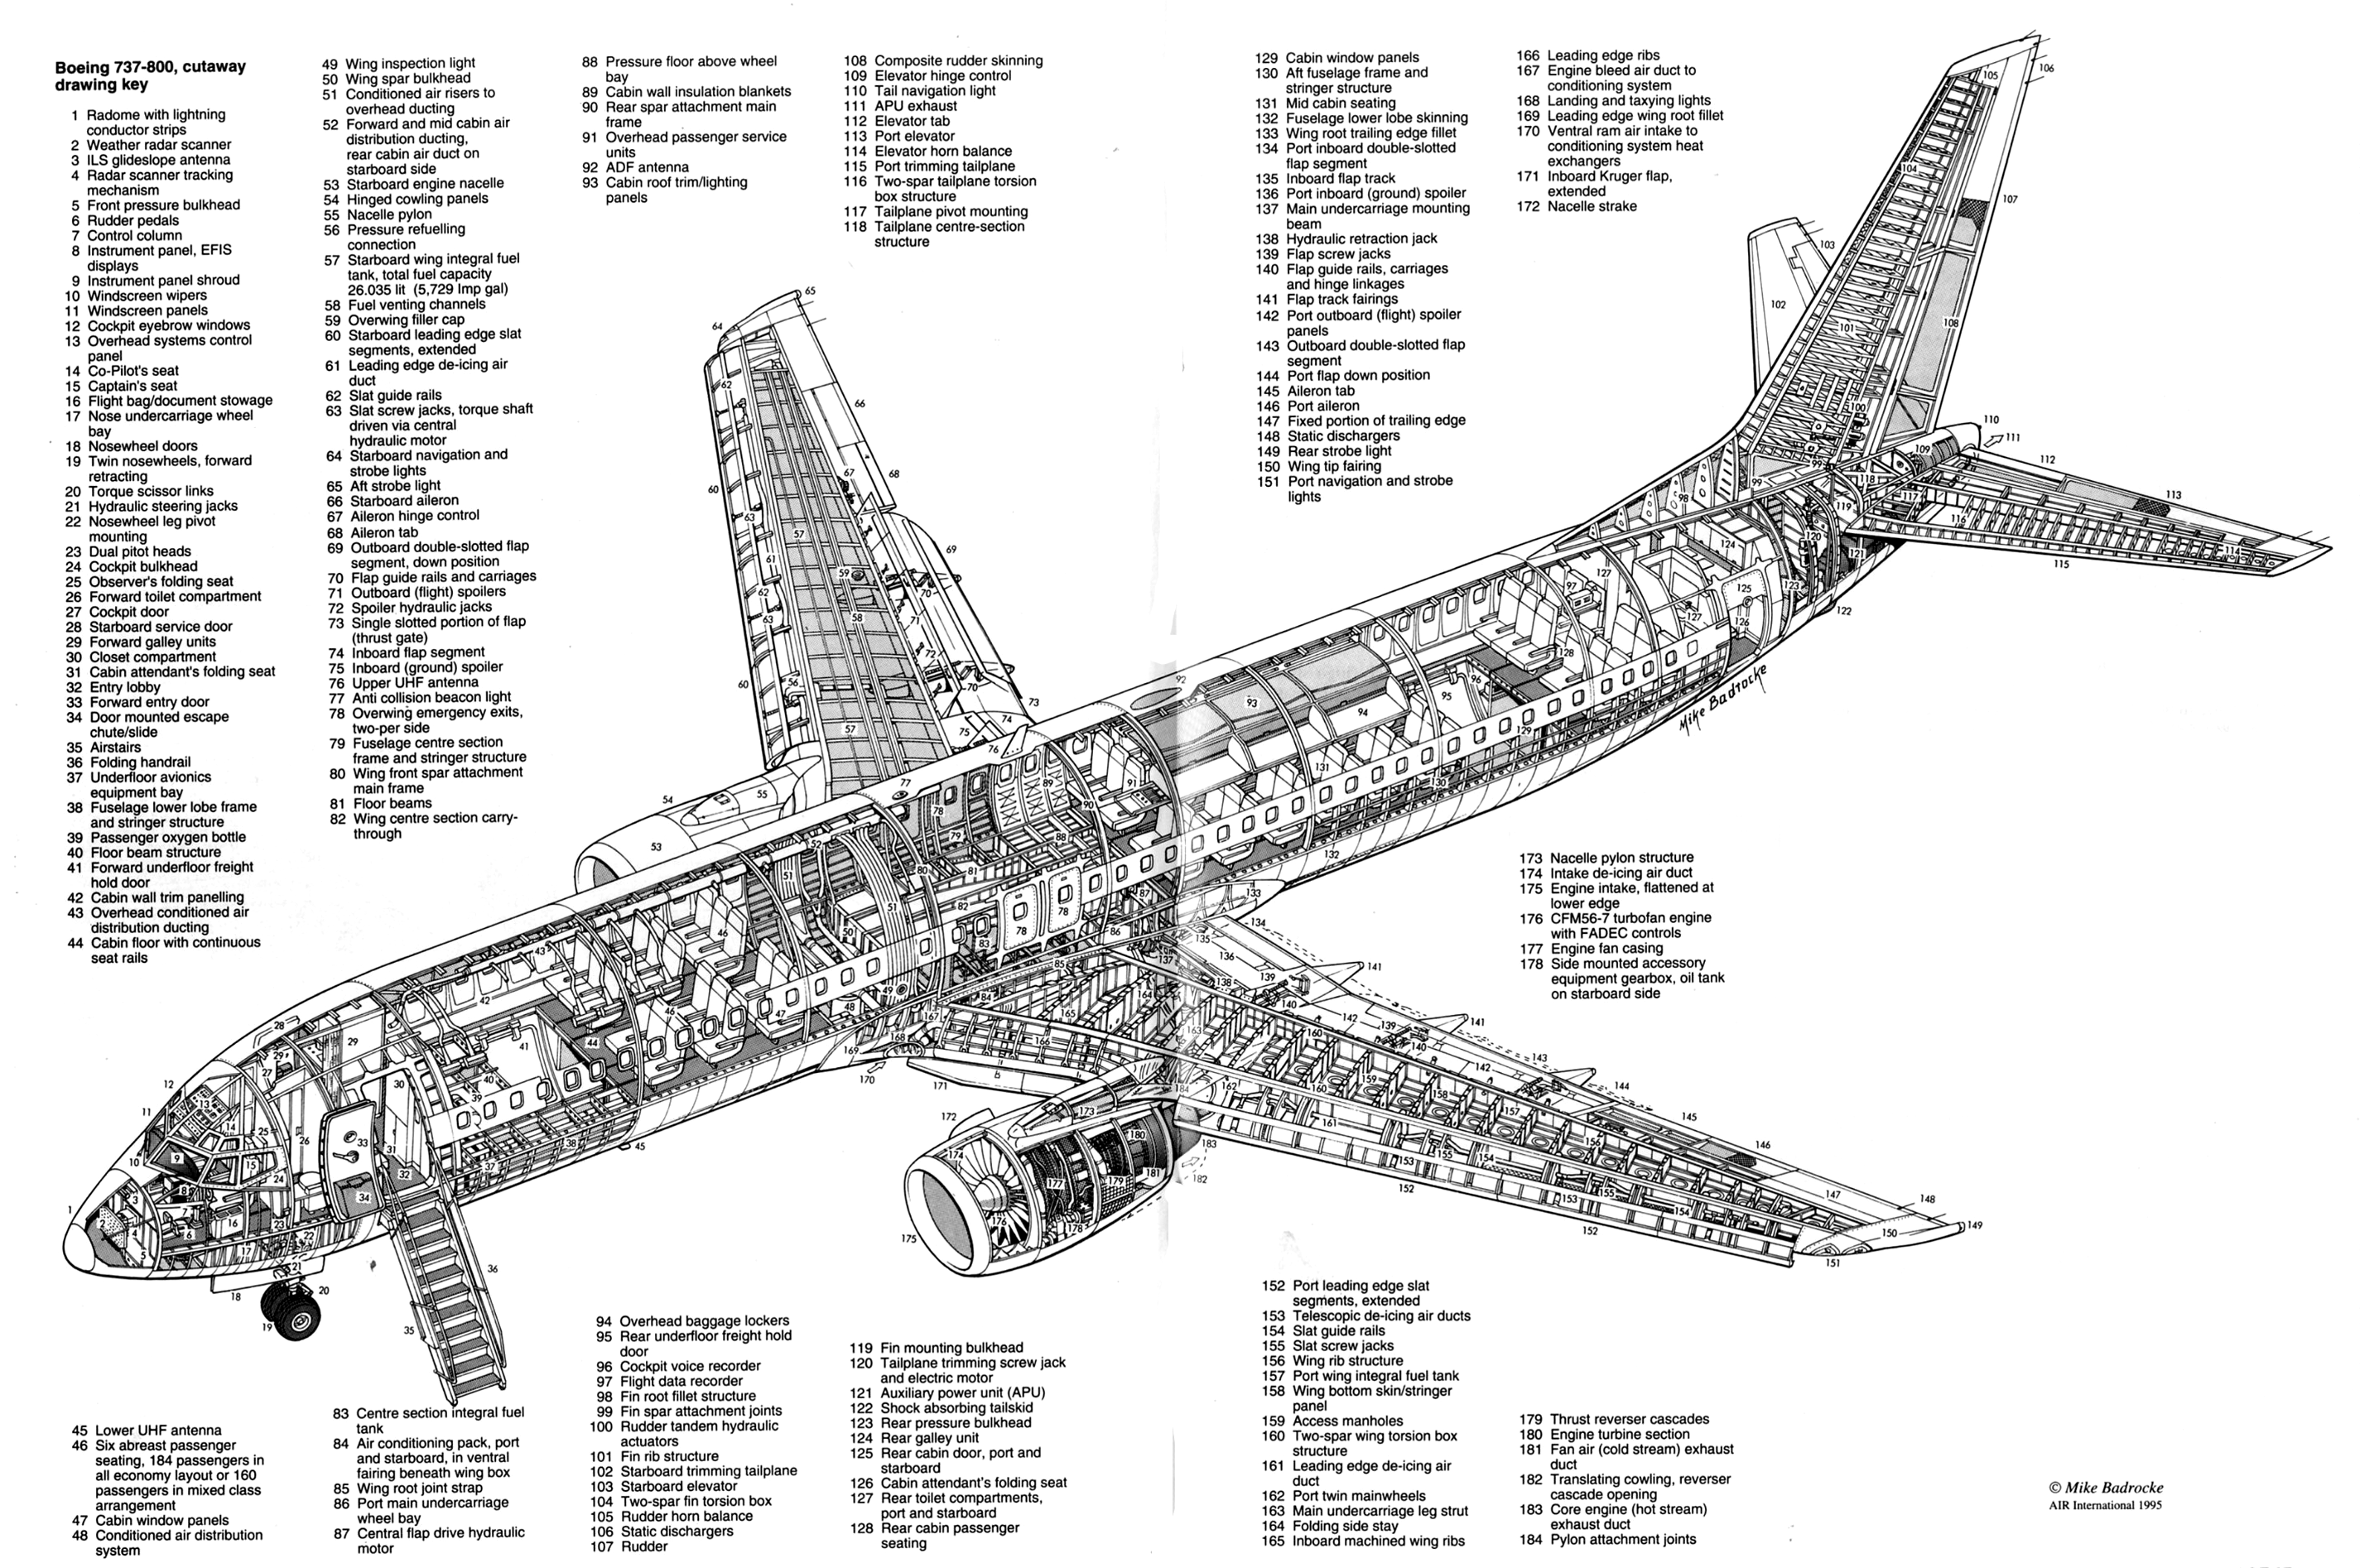 Боинг 737 800 Схема Фото